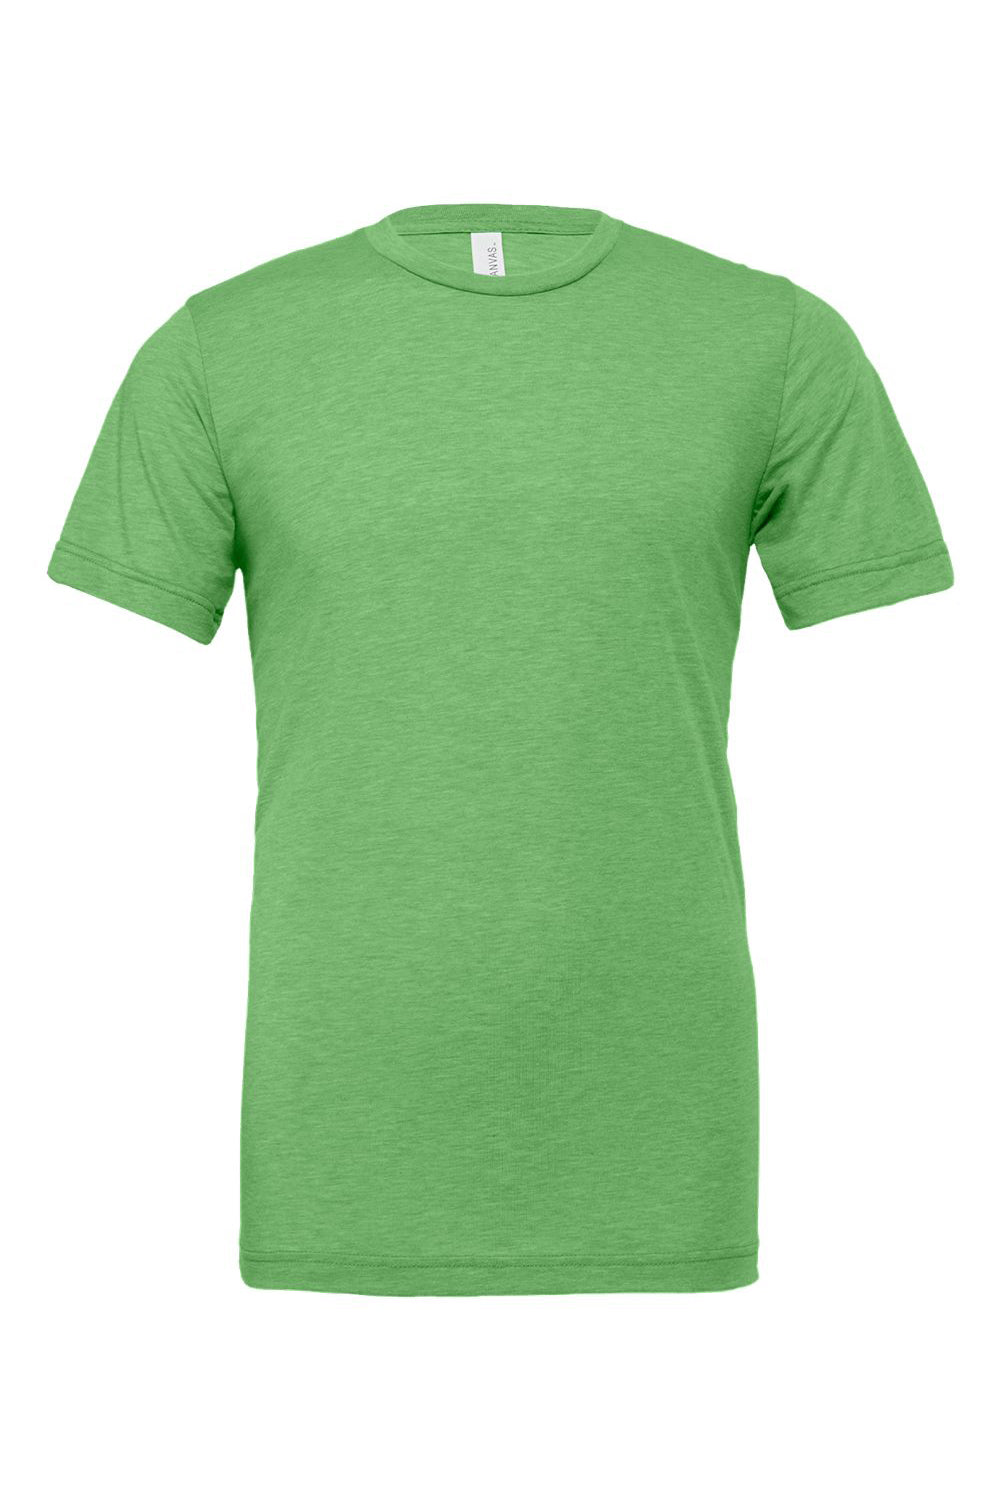 Bella + Canvas BC3413/3413C/3413 Mens Short Sleeve Crewneck T-Shirt Green Flat Front